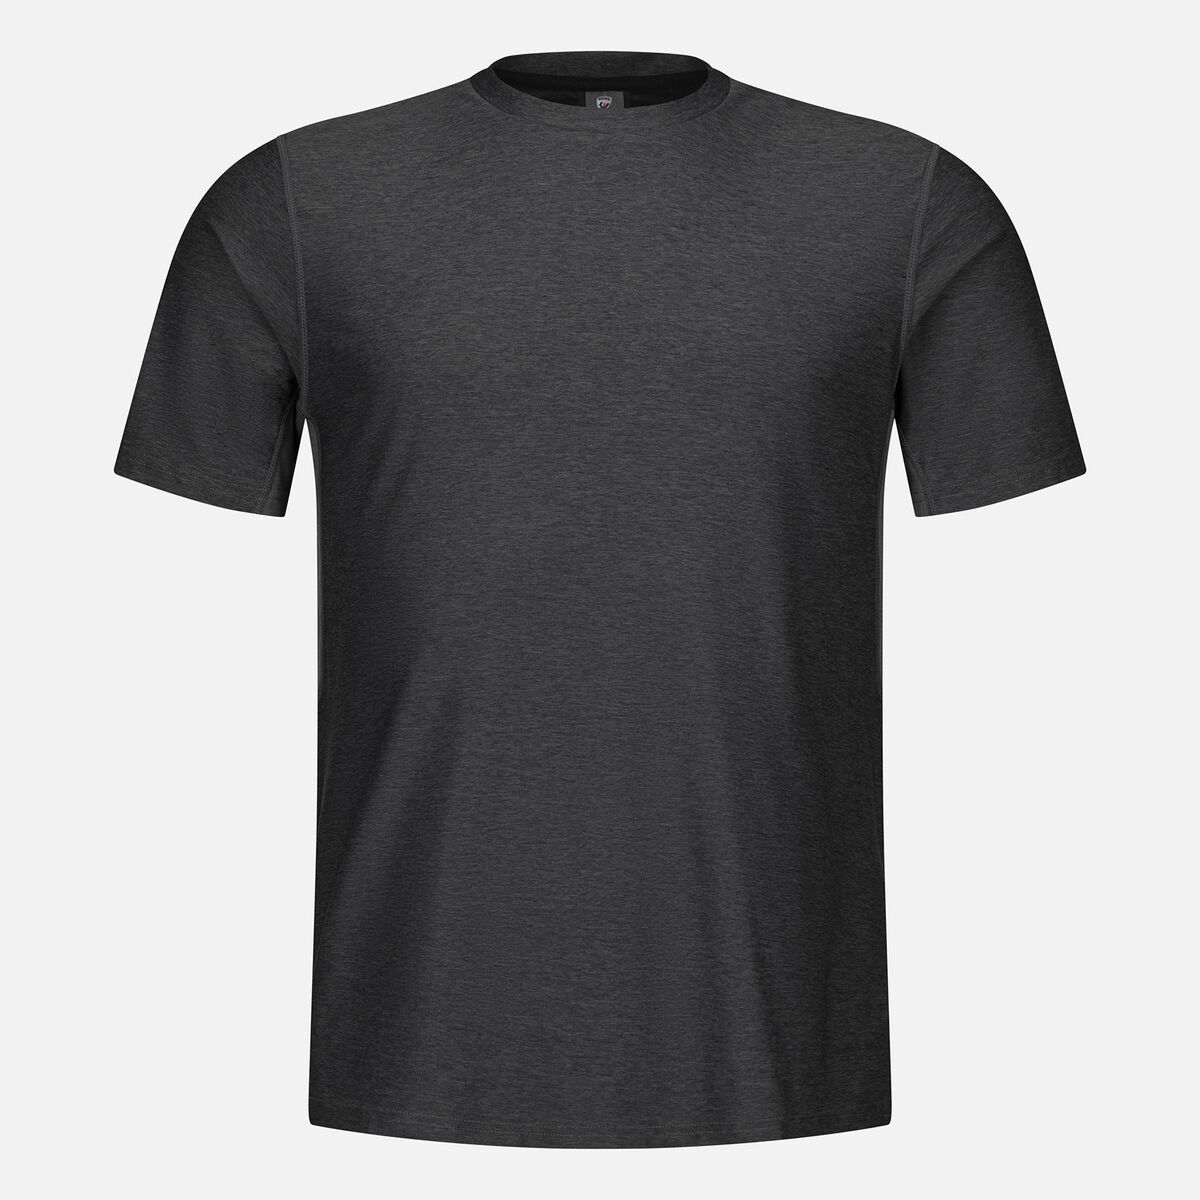 Rossignol Camiseta de senderismo con efecto Melange para hombre grey